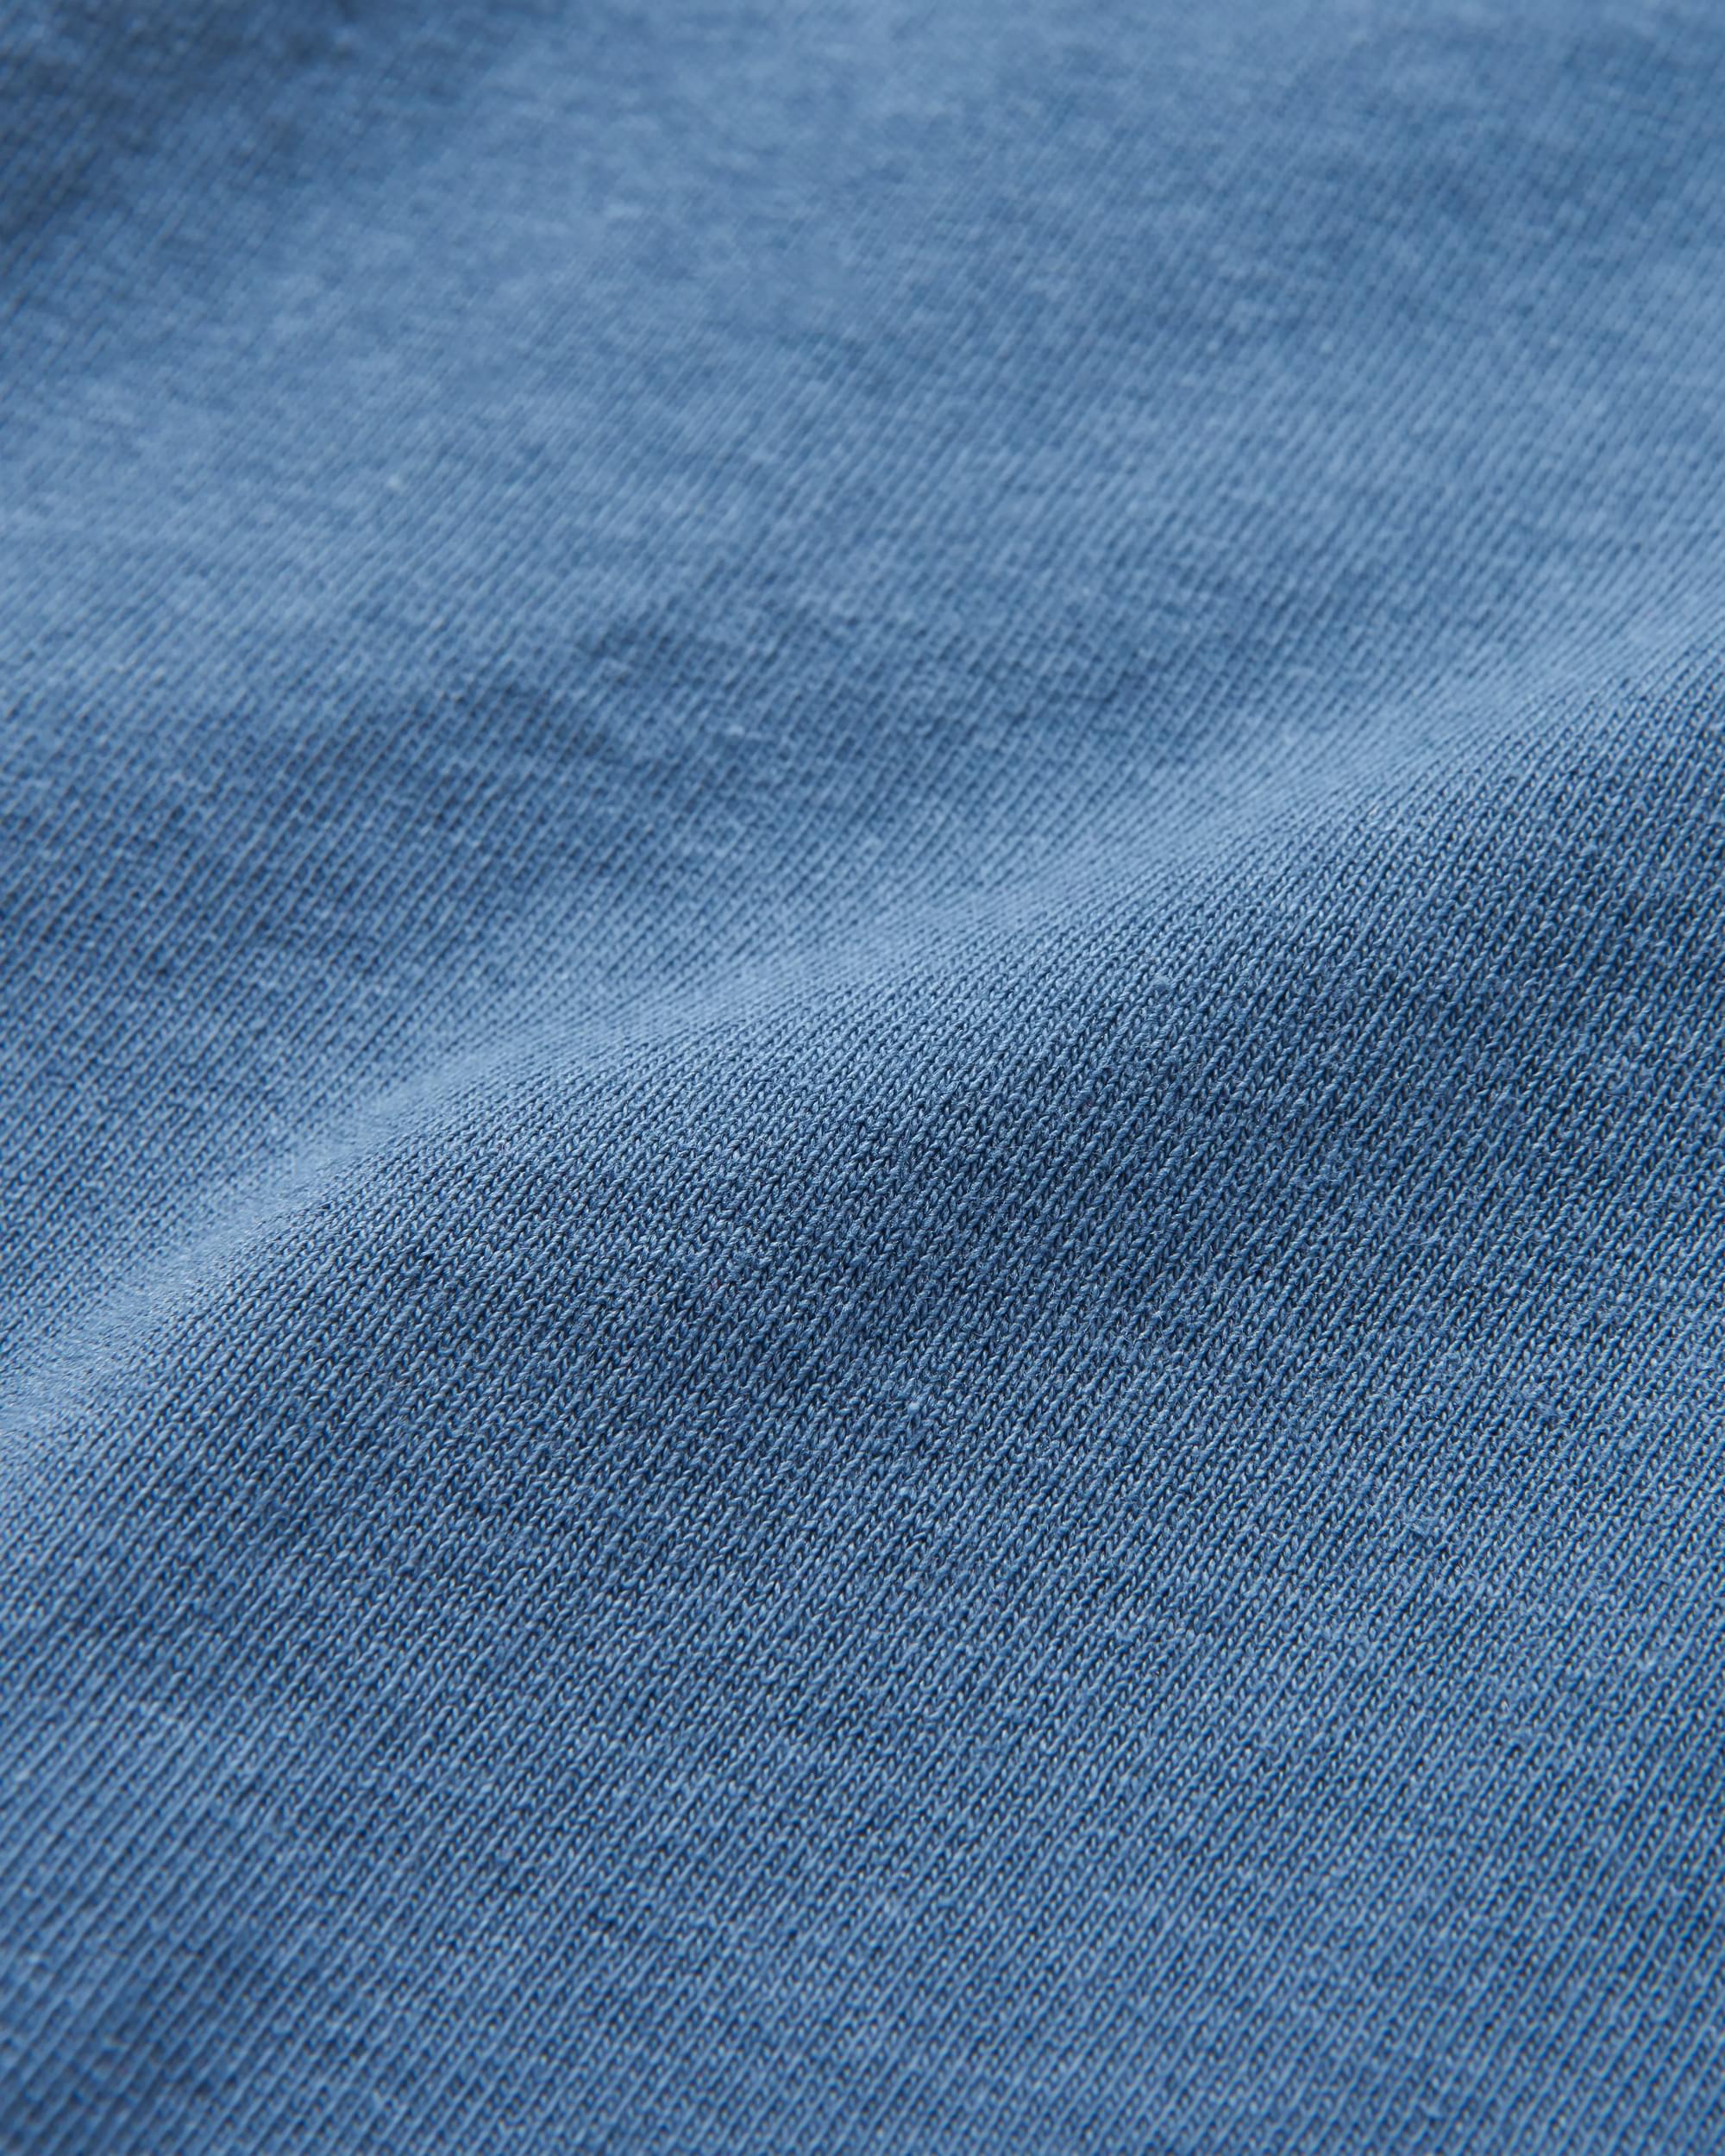 Kaufman Indigo Denim 10 Oz Washed Bleach Indigo | Indigo fabric, Fabric  textures, Denim fabric